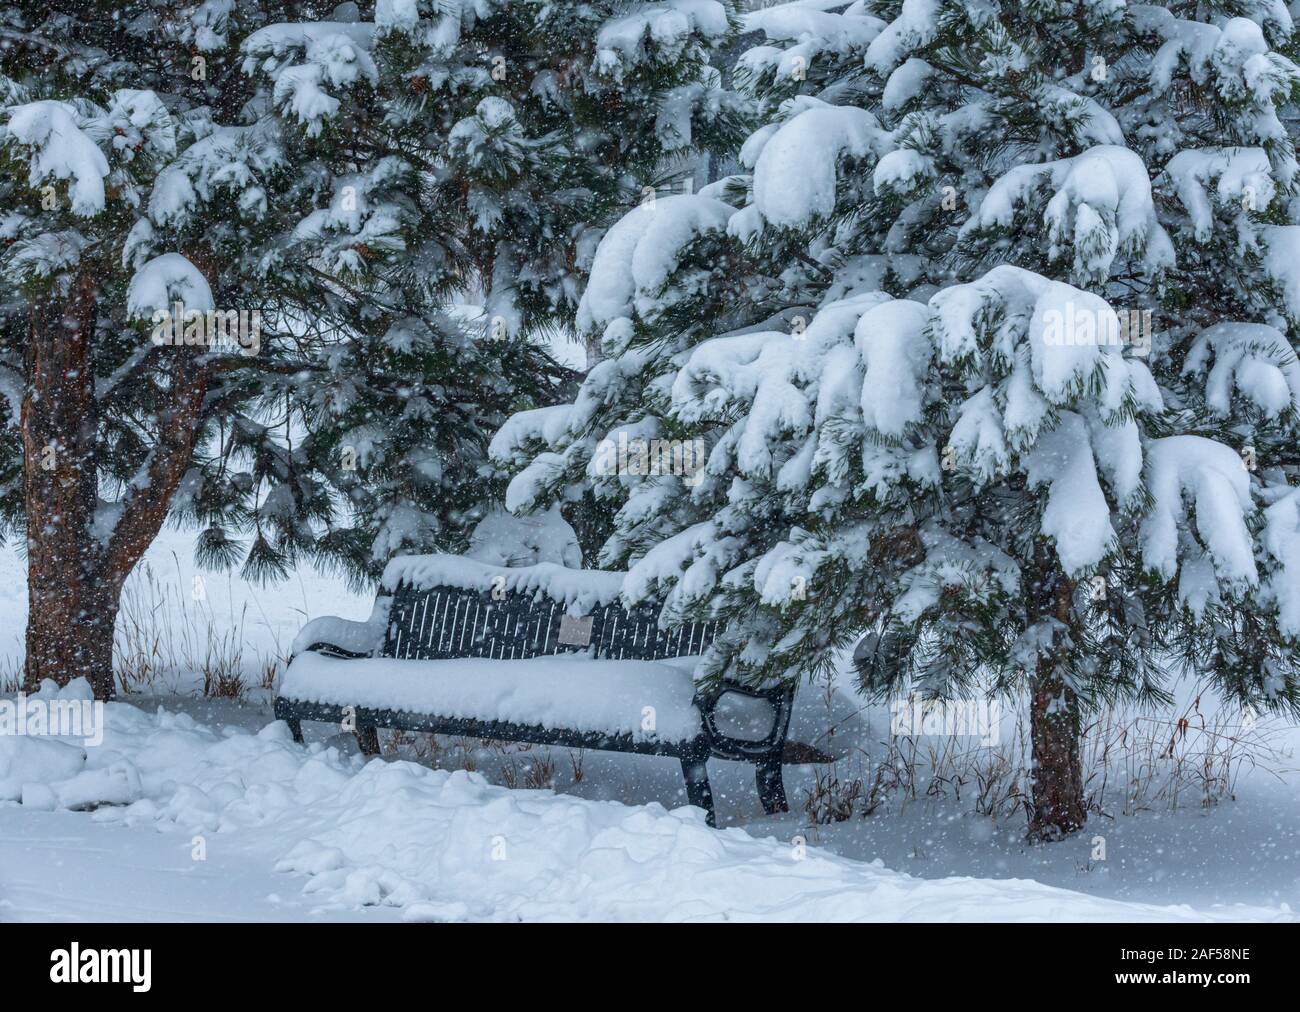 Neige fraîche couvre banc de parc de pins Ponderosa et arbres au bord de l'Est Sentier de Plum Creek, Castle Rock Colorado. Photo a été prise en novembre. Banque D'Images